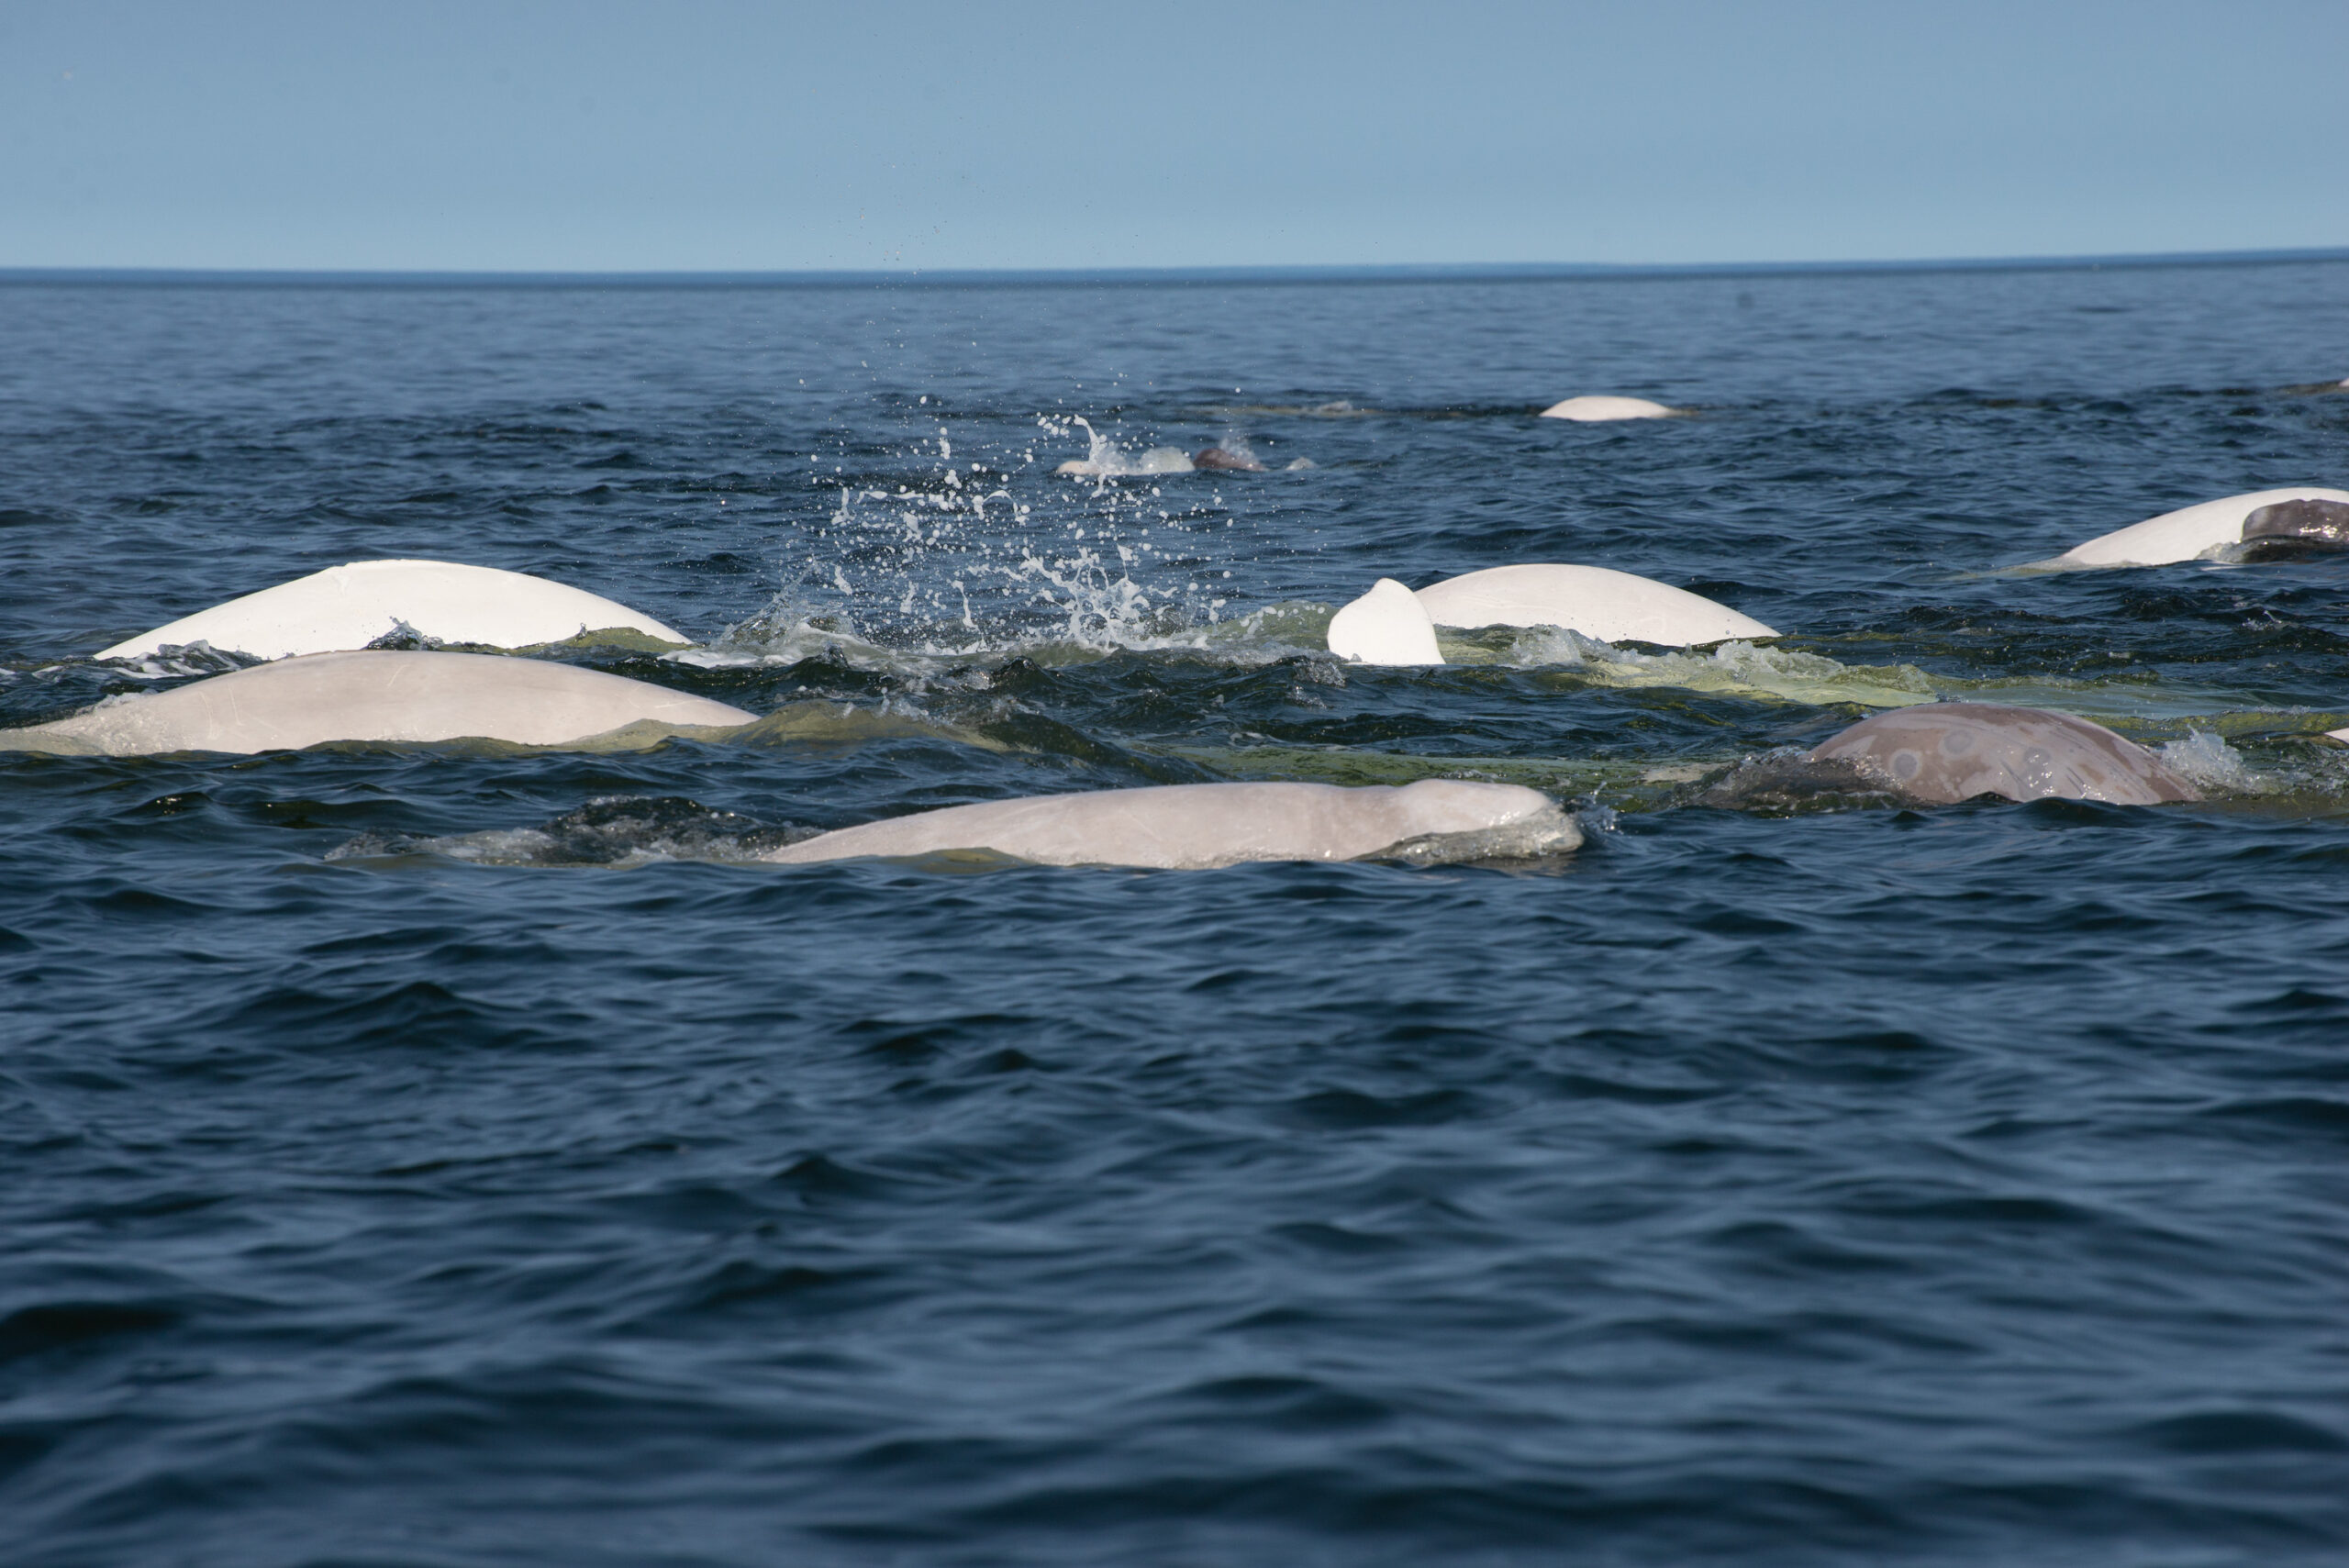 Beluga Whales Feeding in the Ocean